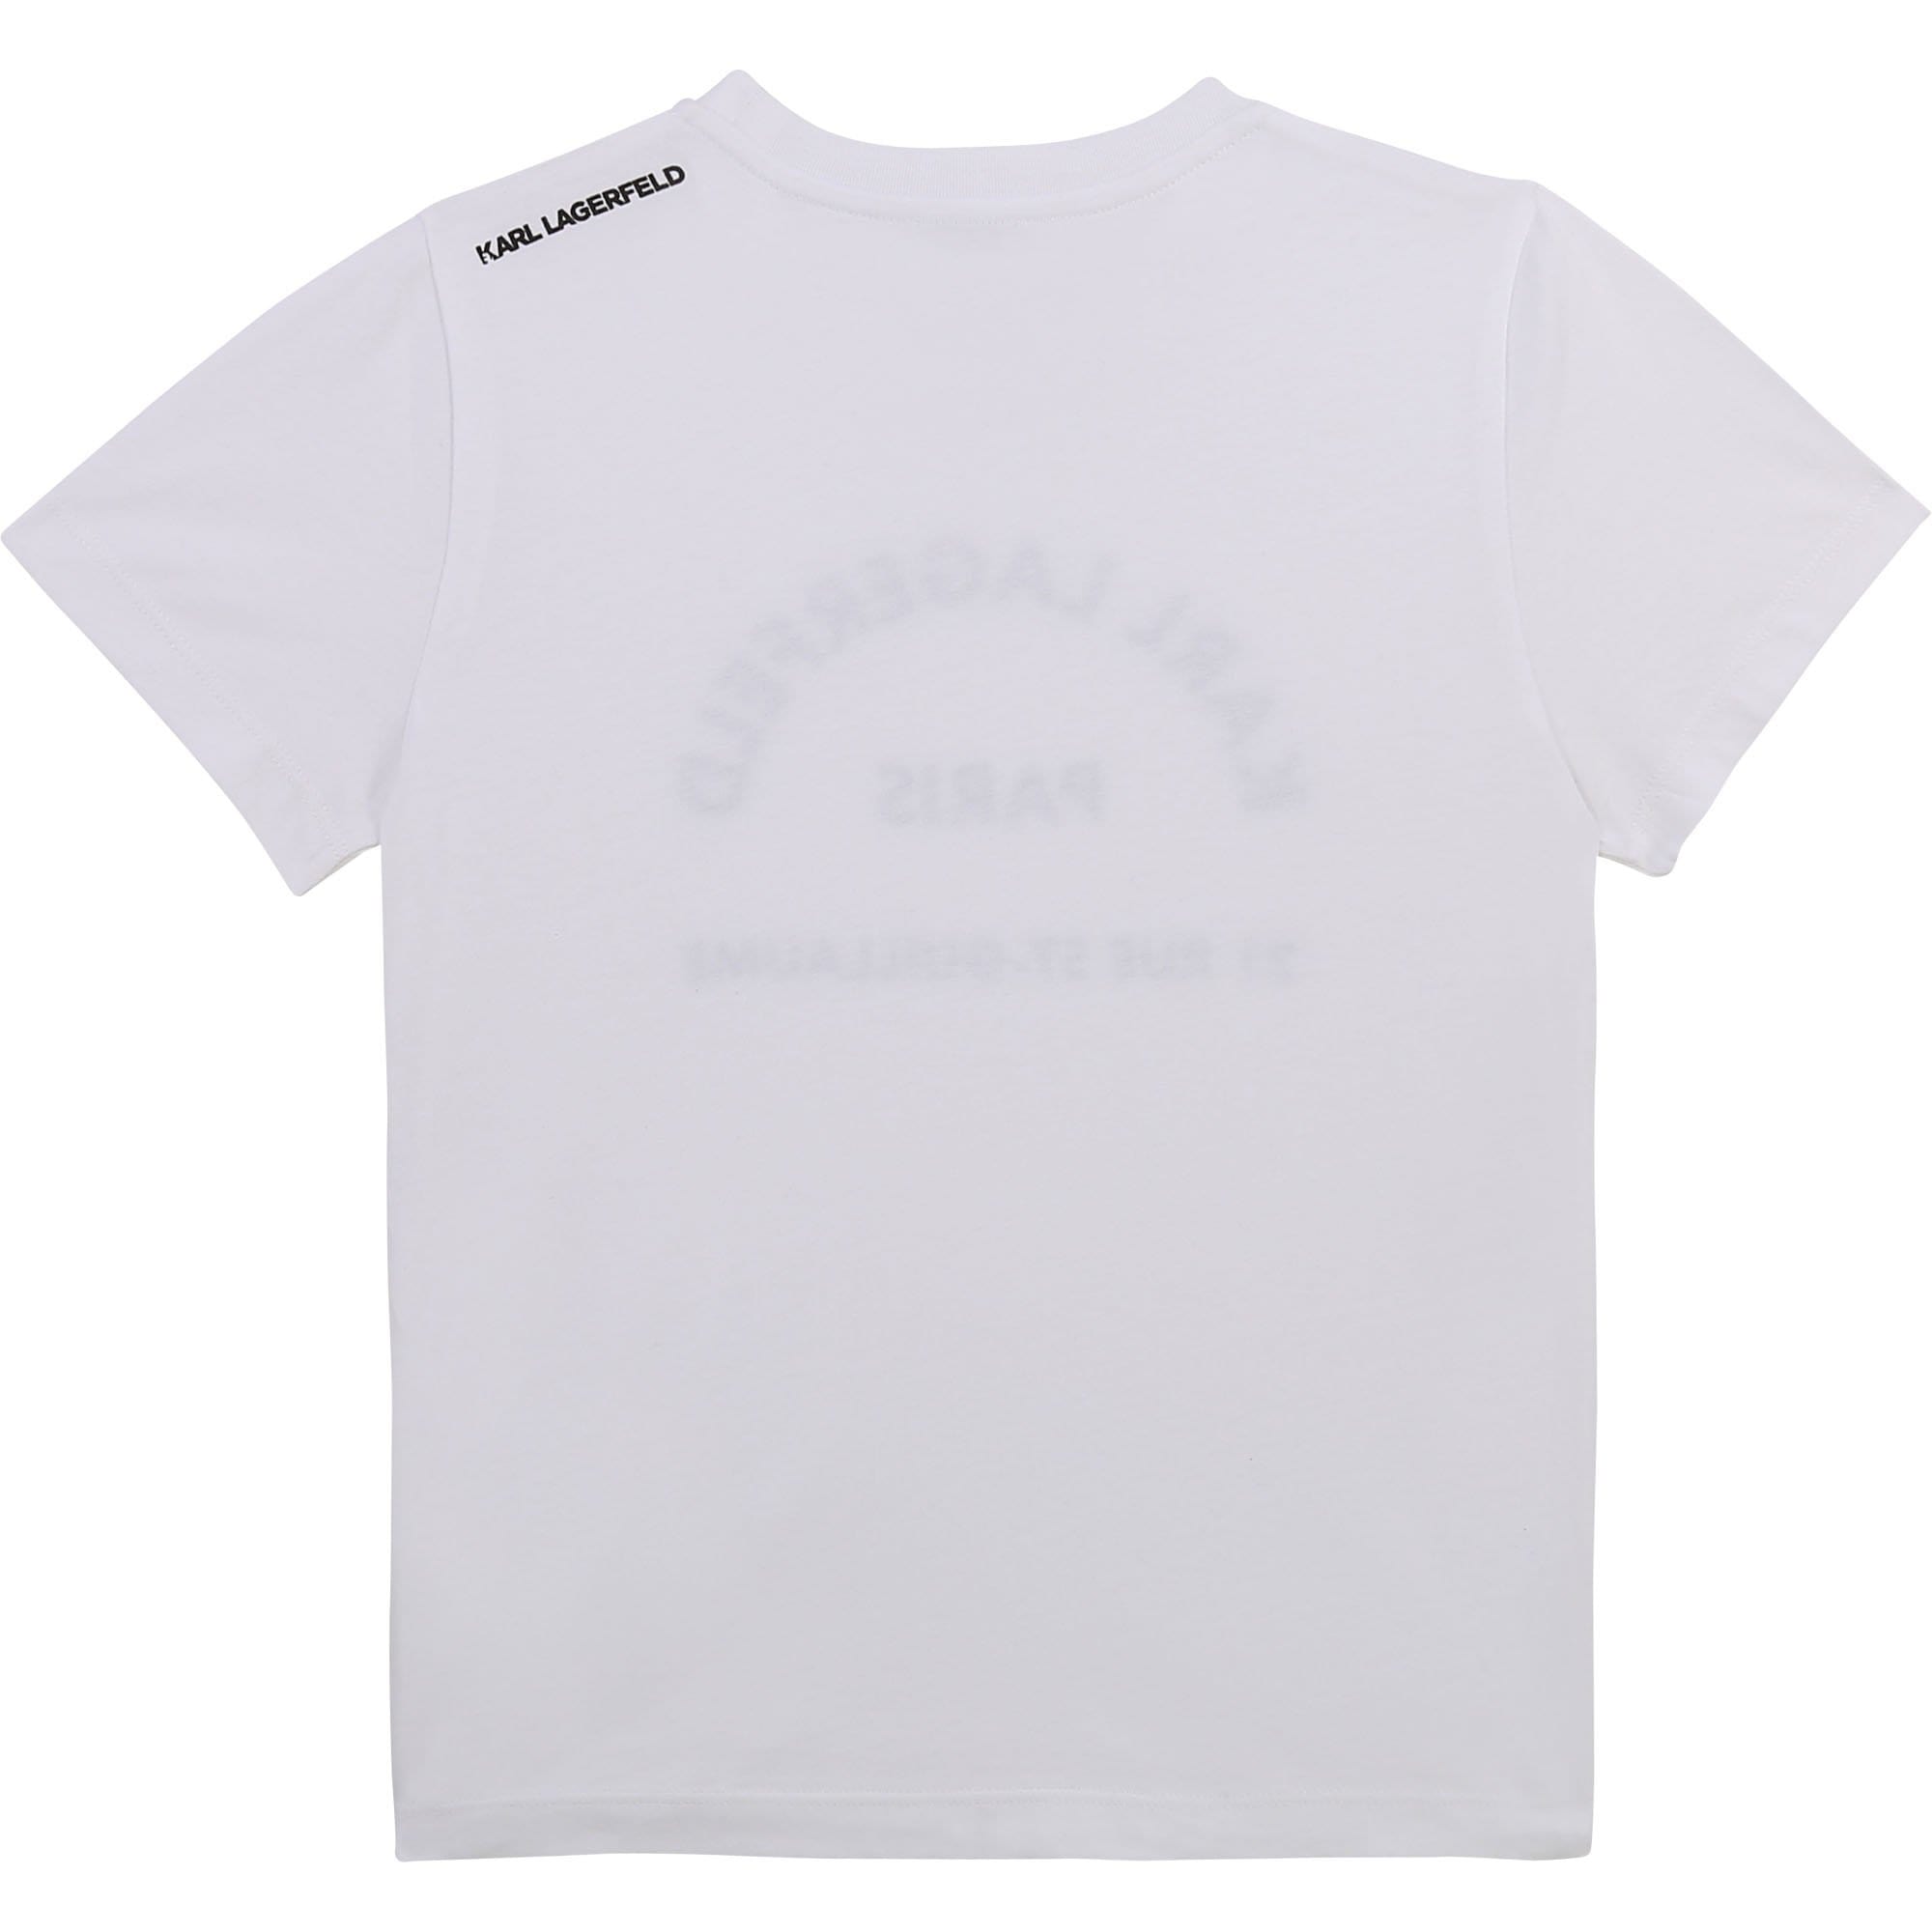 Karl Lagerfeld - Short Sleeve Logo Tee - White